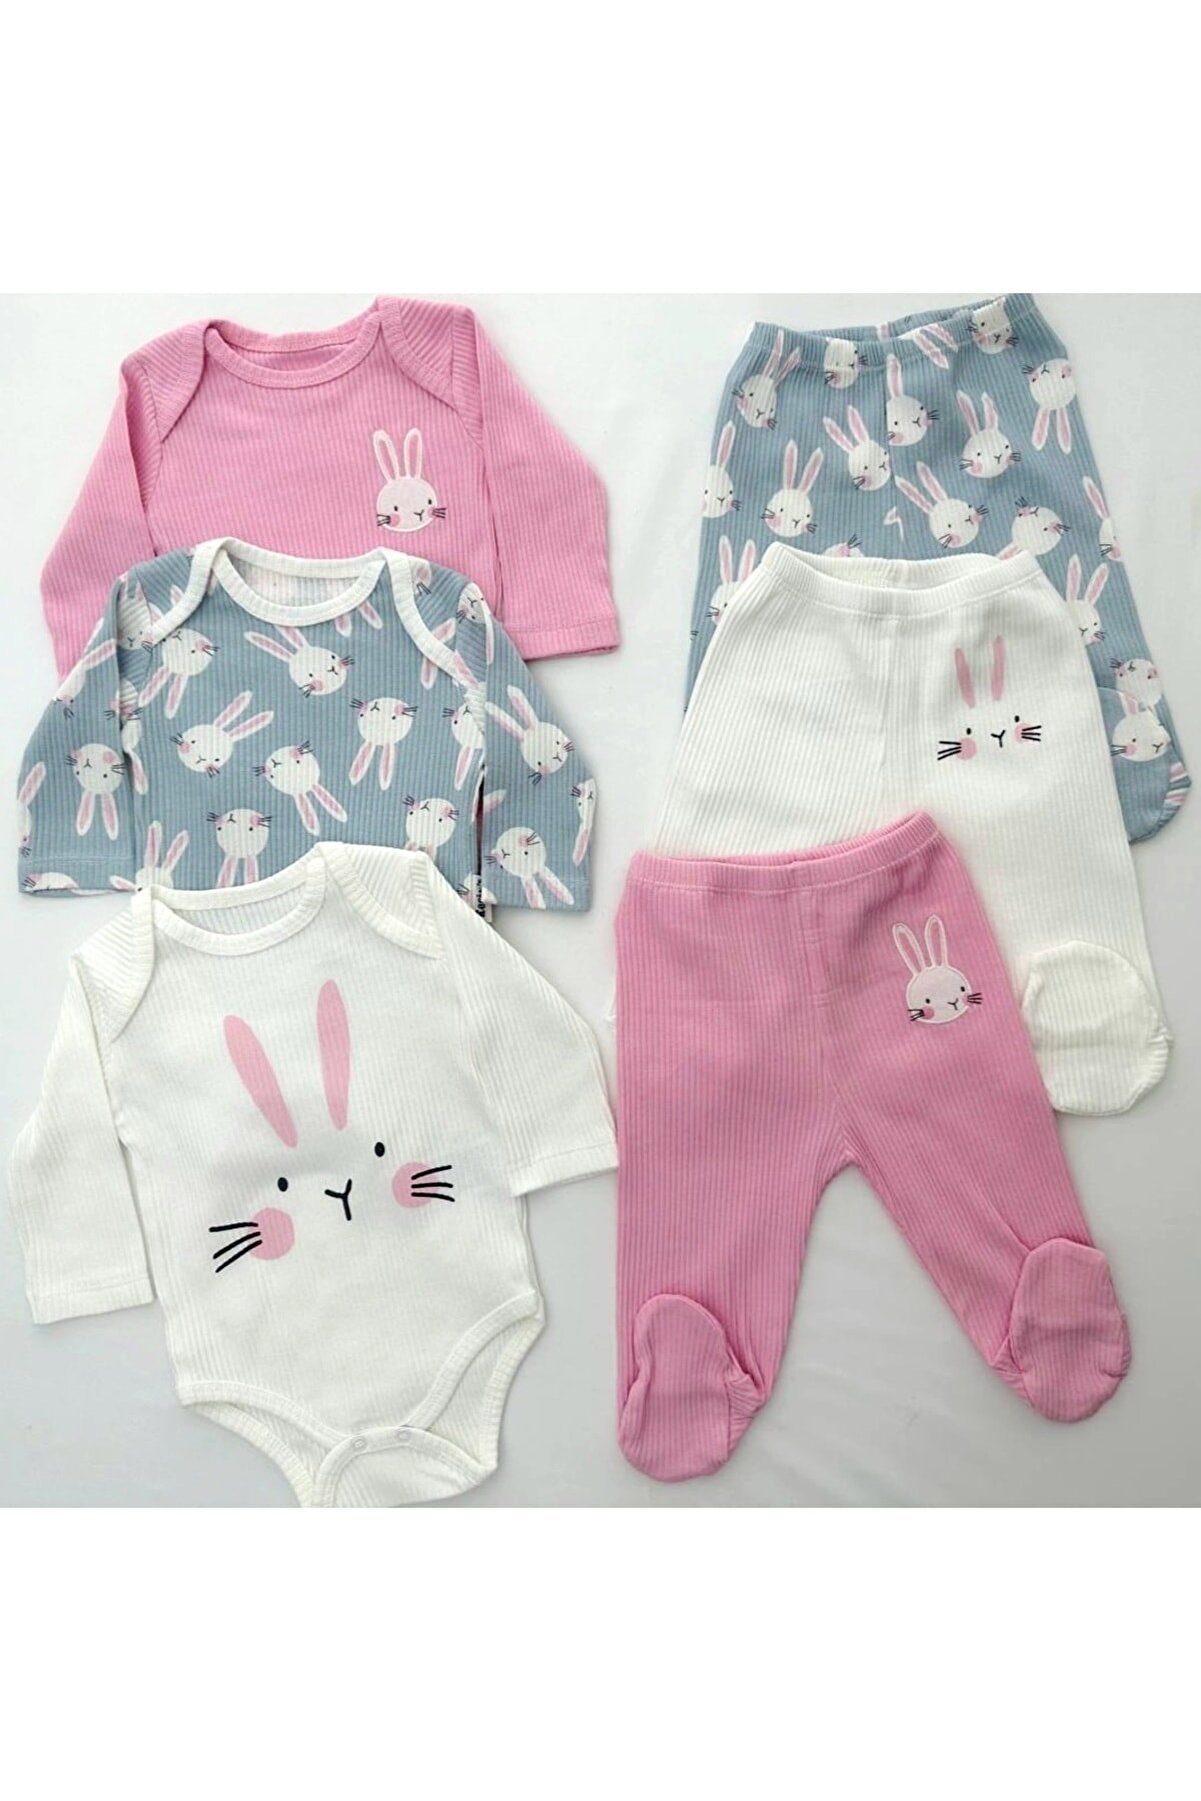 Necix's Necix’s tavşan desenli pembe kız bebek kıyafeti 6’lı alt üst takım (3 çıtçıtlı body+3 patikli alt)